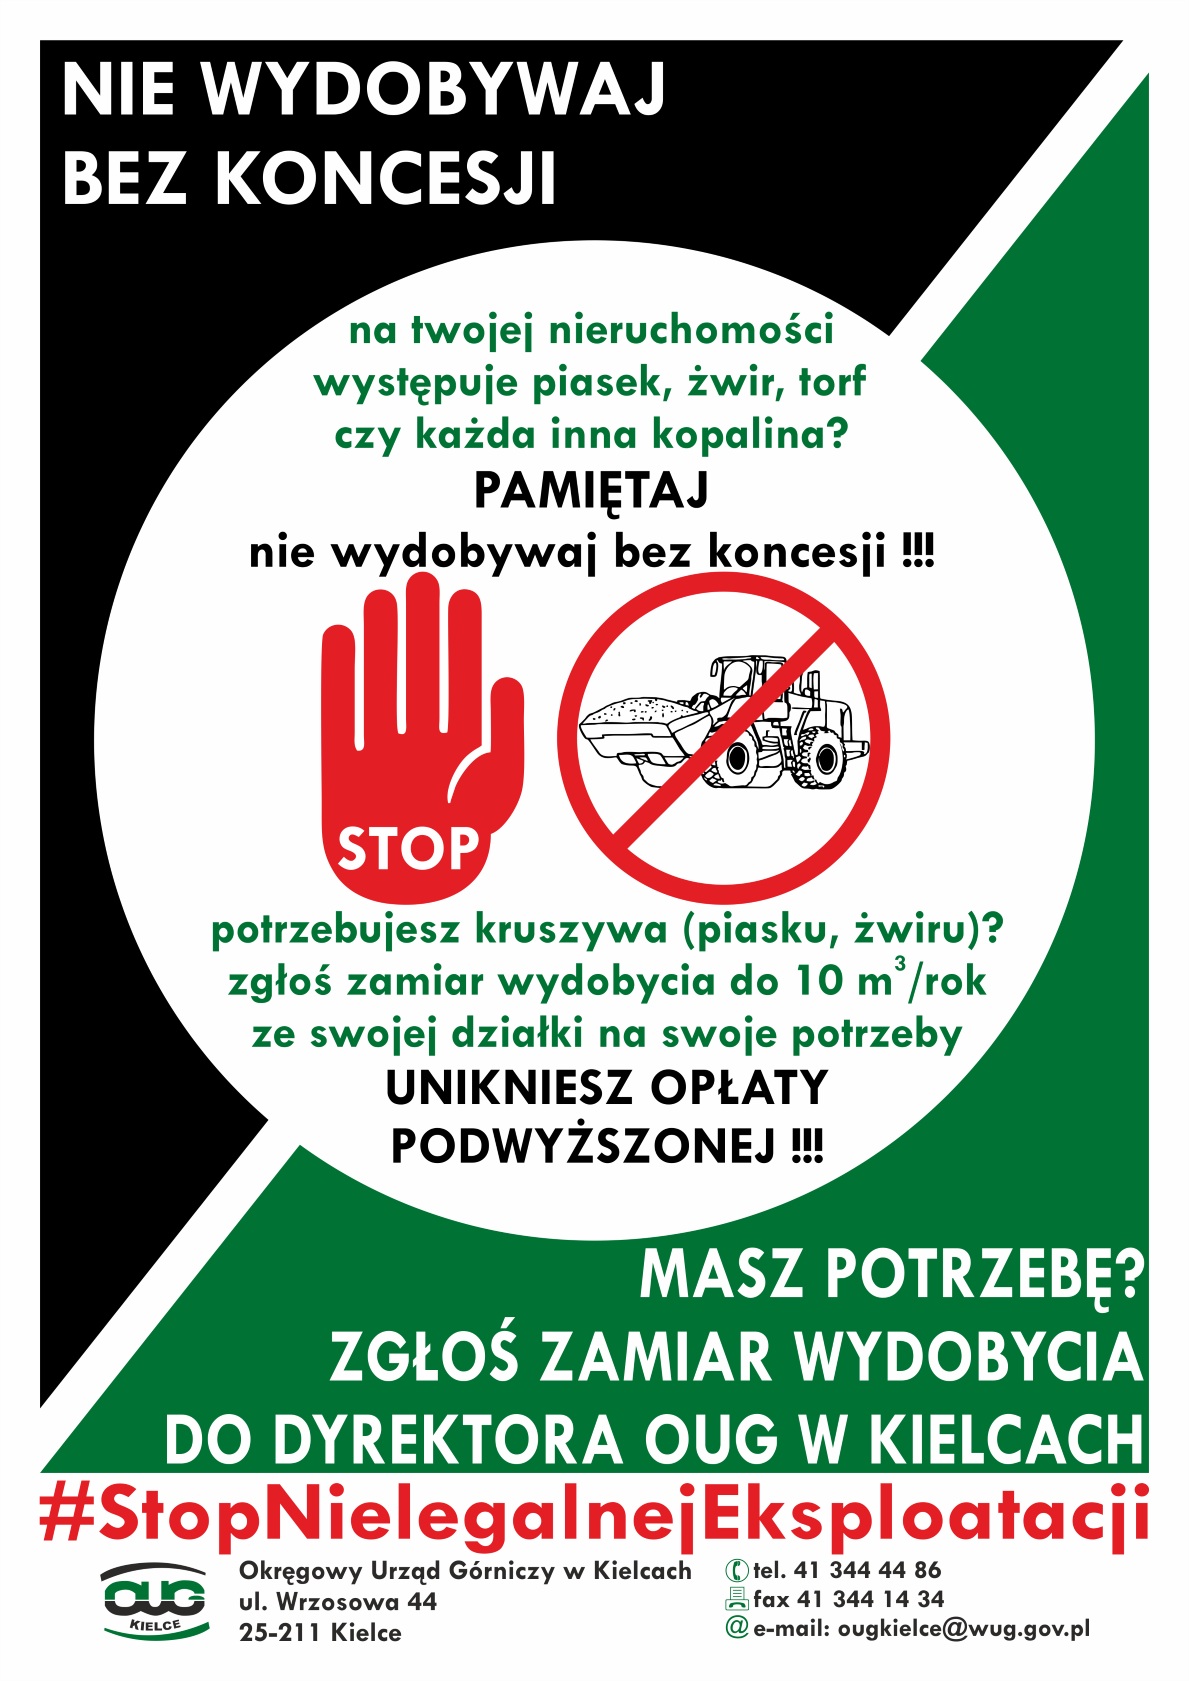 Materiał informacyjny Okręgowego Urzędu Górniczego w Kielcach - "Nie wydobywaj bez koncesji"